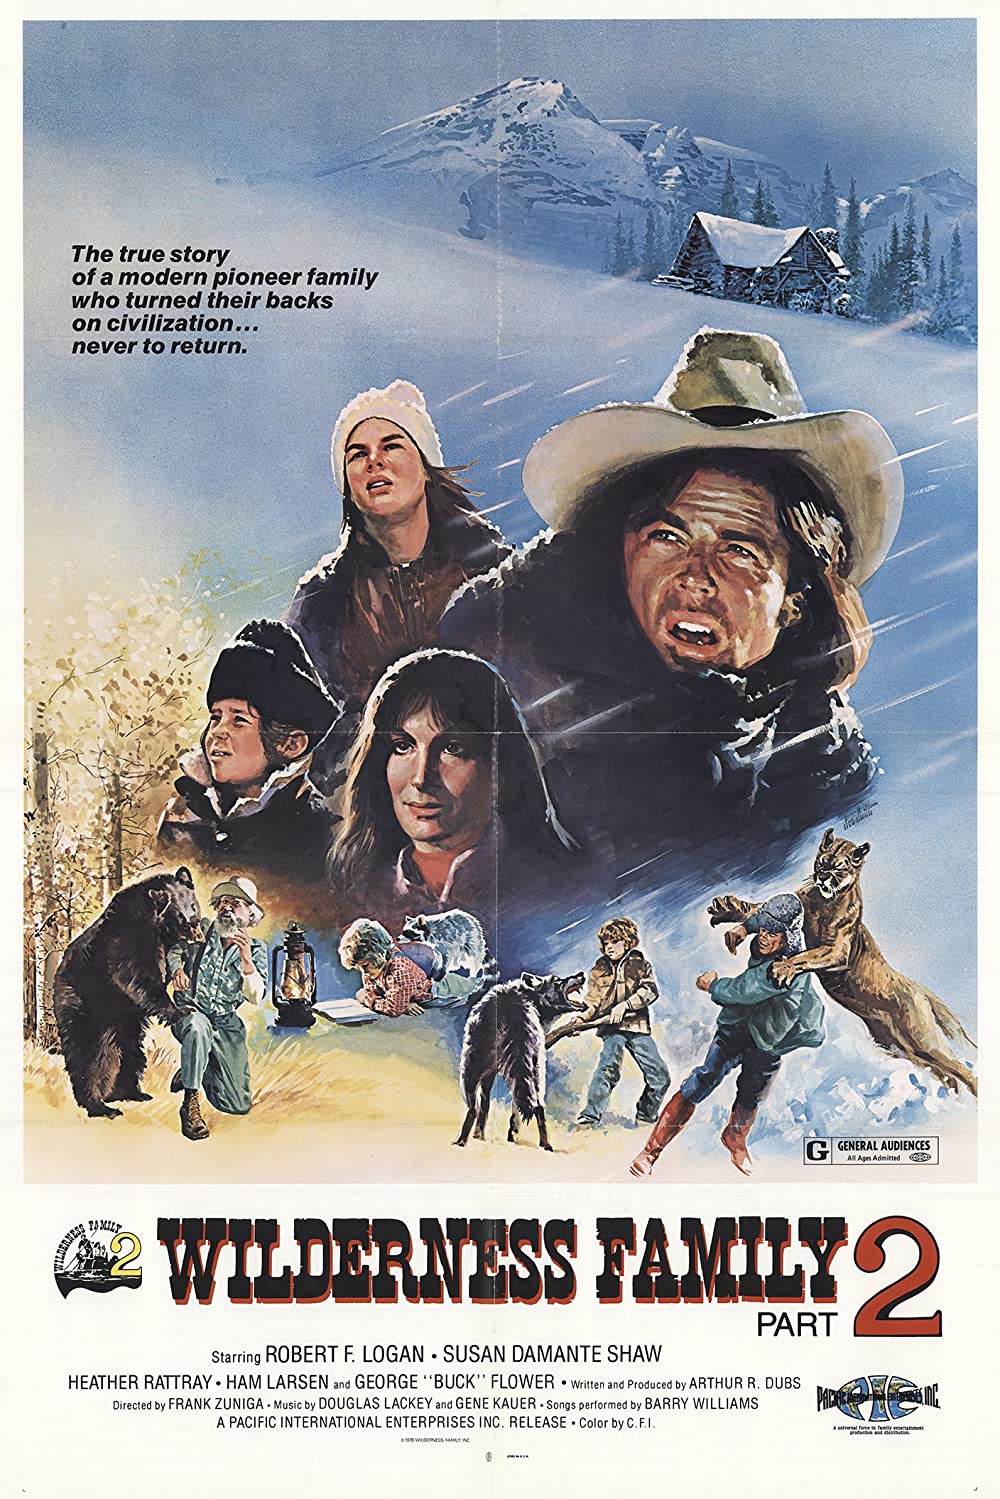 ดูหนังออนไลน์ฟรี The Further Adventures of the Wilderness Family (1978) บ้านเล็กในป่าใหญ่ ภาค 2 ตอนฤดูหนาวอันยาวนาน หนังเต็มเรื่อง หนังมาสเตอร์ ดูหนังHD ดูหนังออนไลน์ ดูหนังใหม่